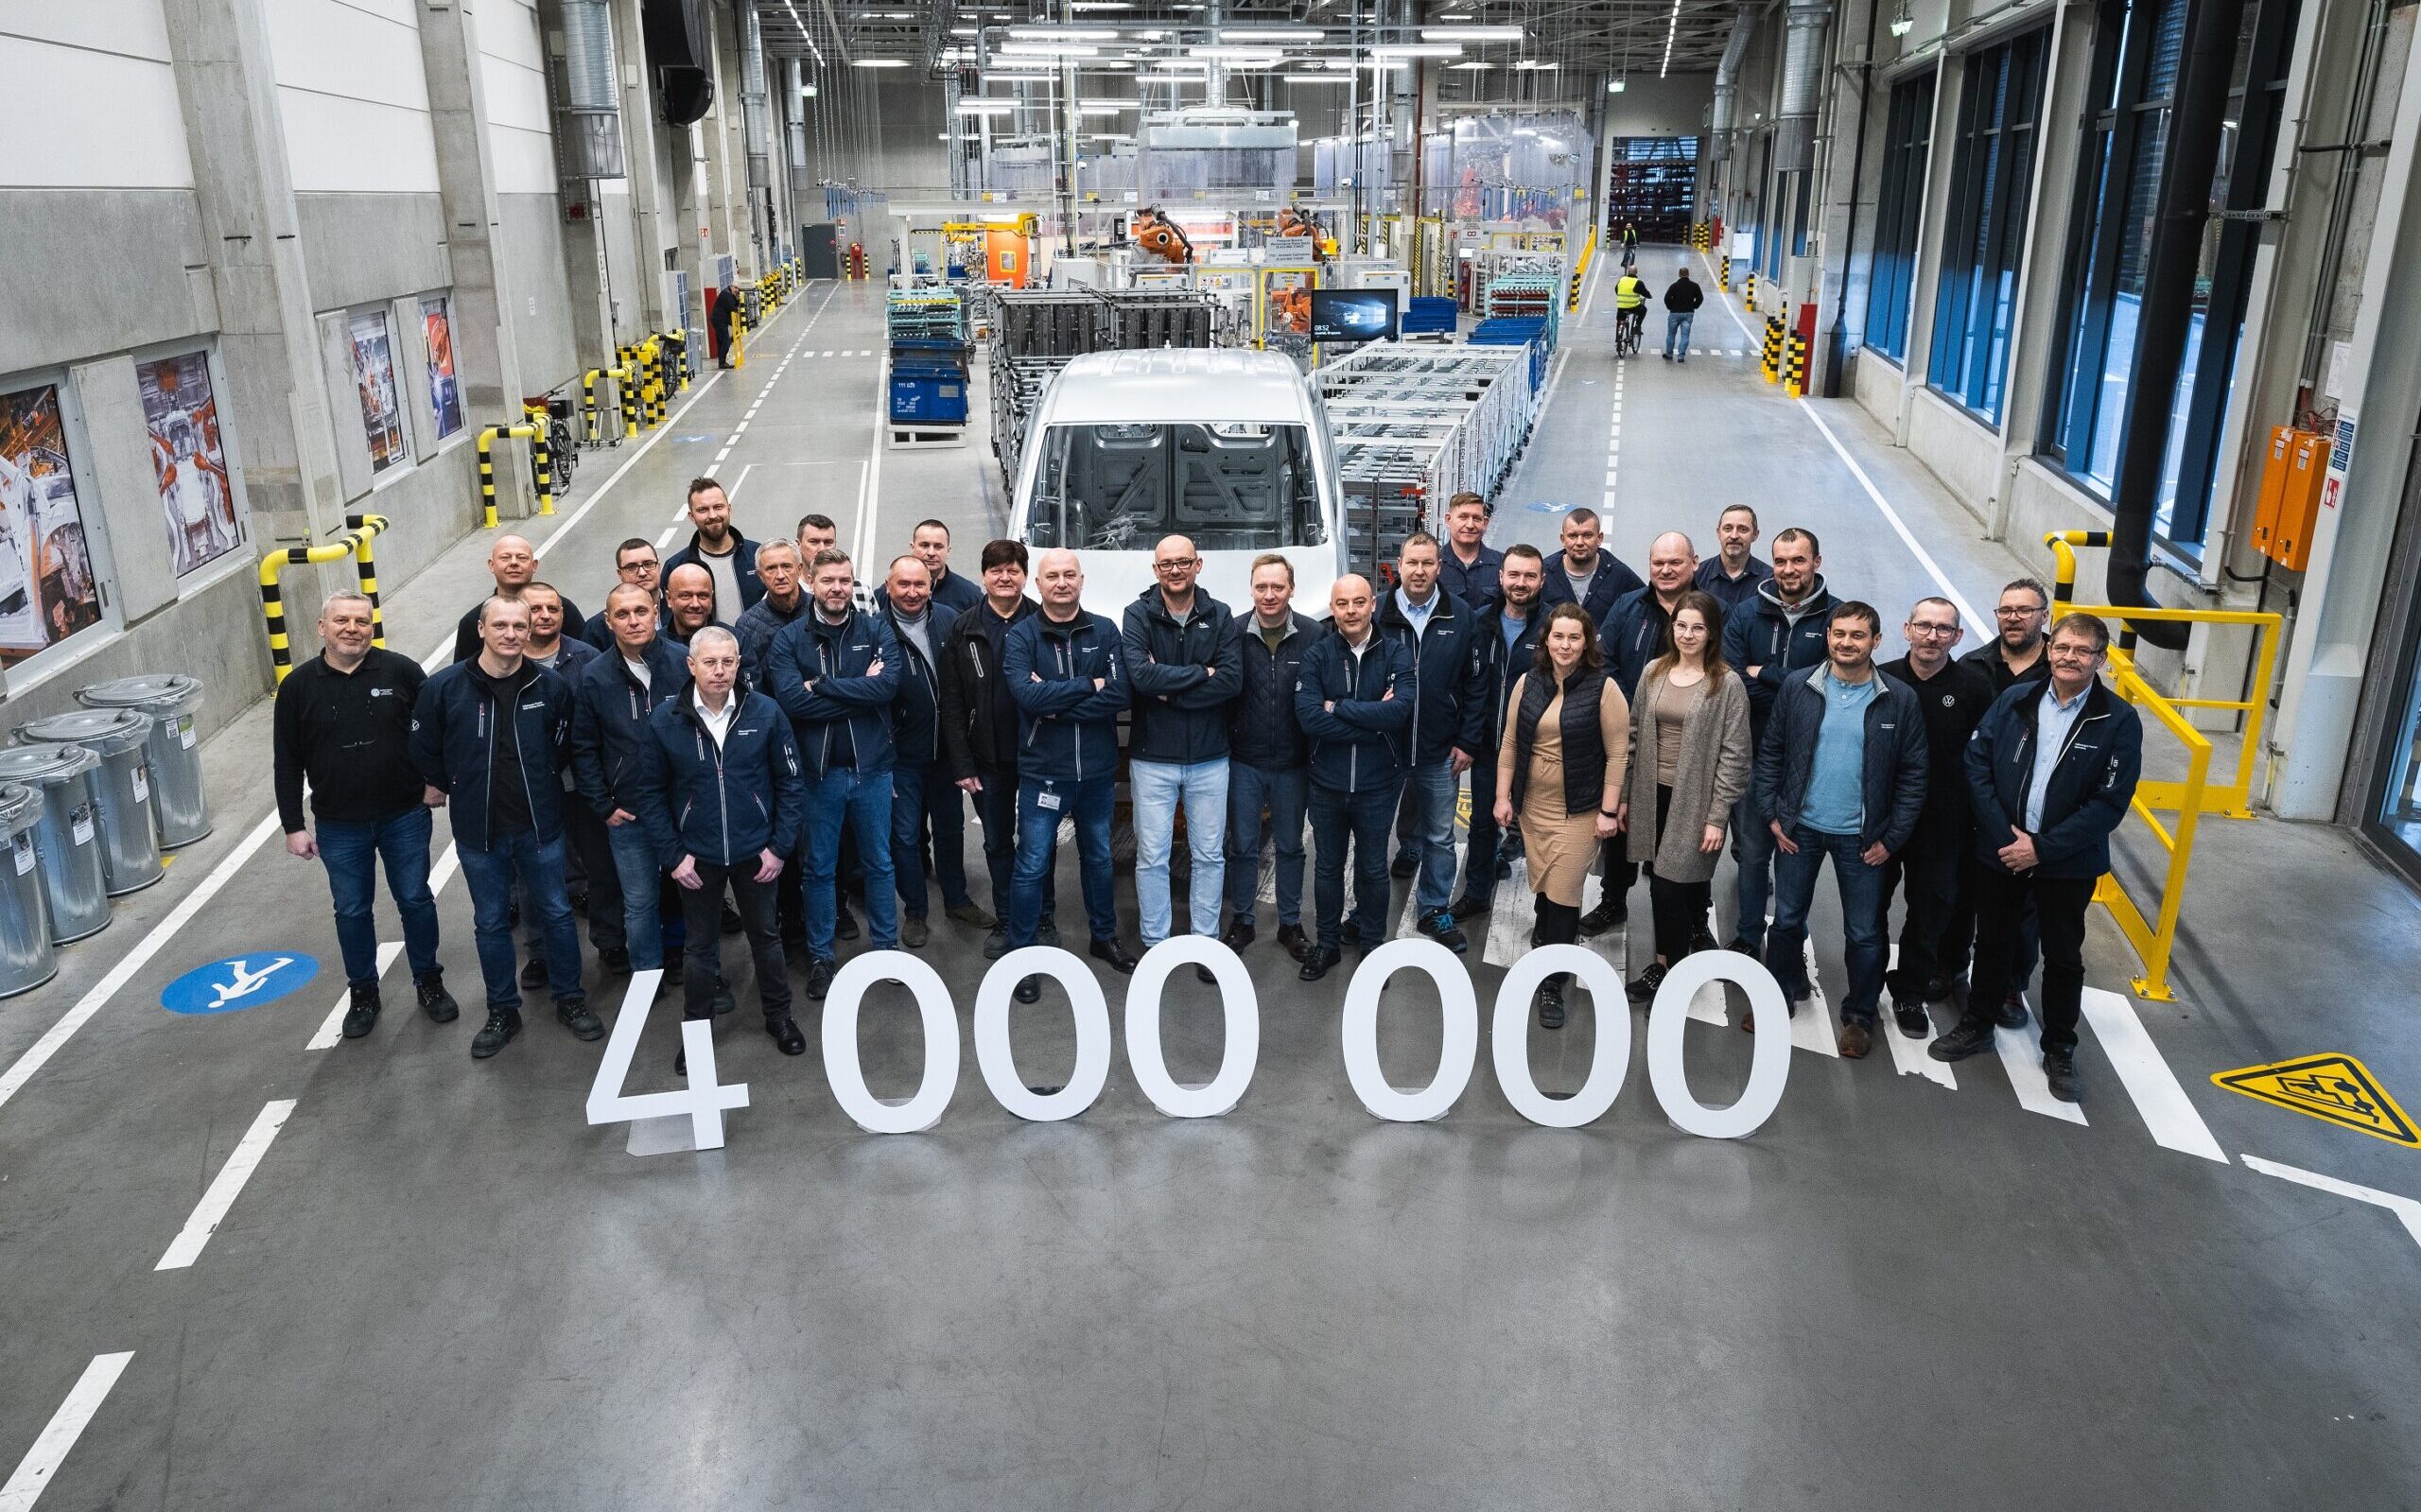 Fabryka Volkswagen Poznań czteromilionowym egzemplarzem Caddy